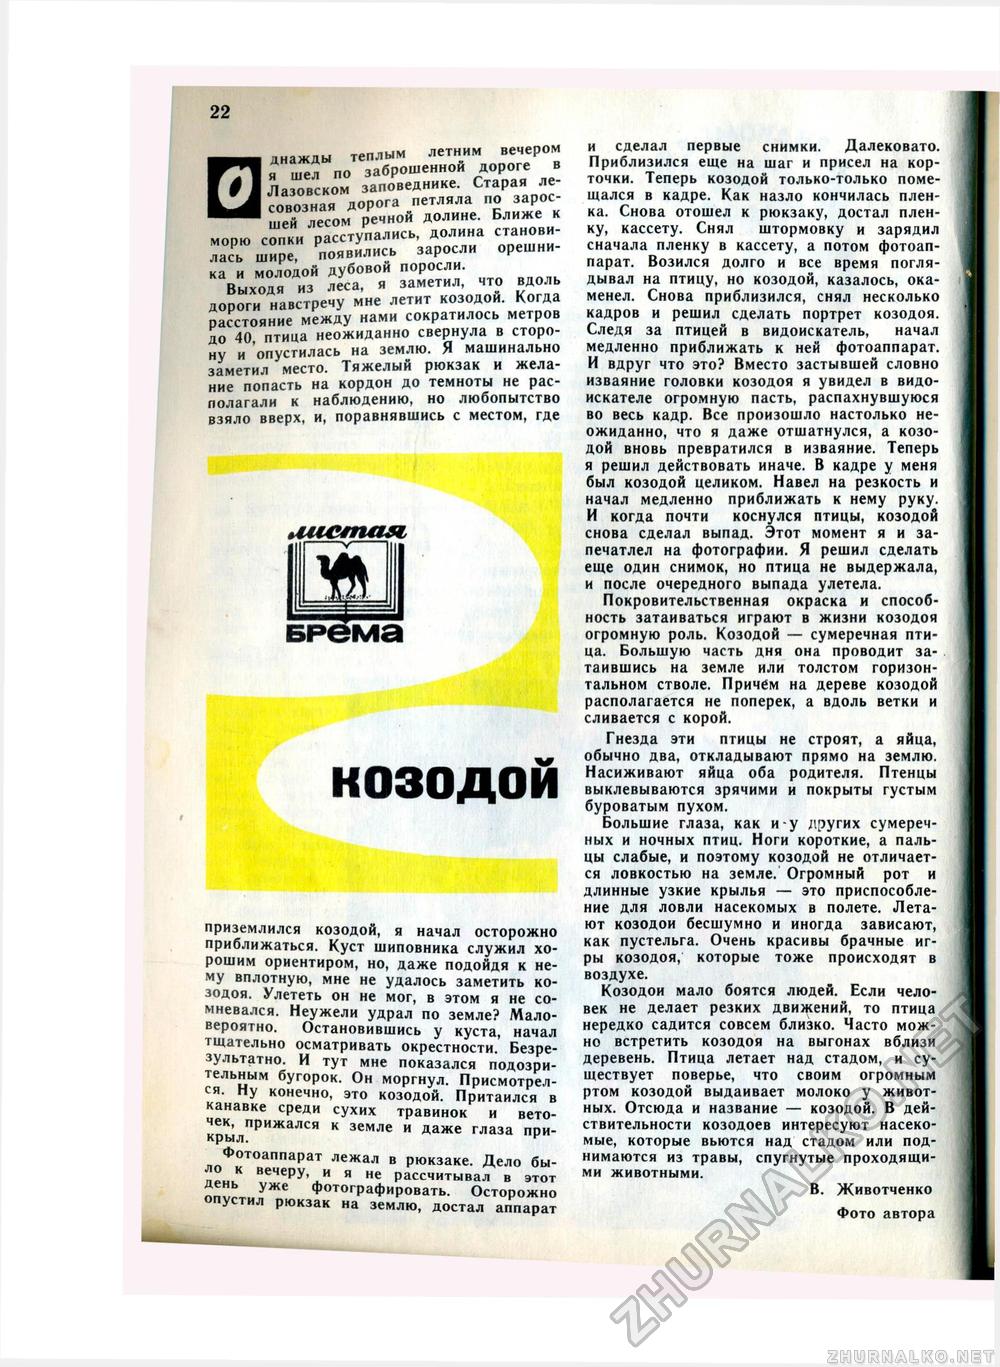   1978-07,  24